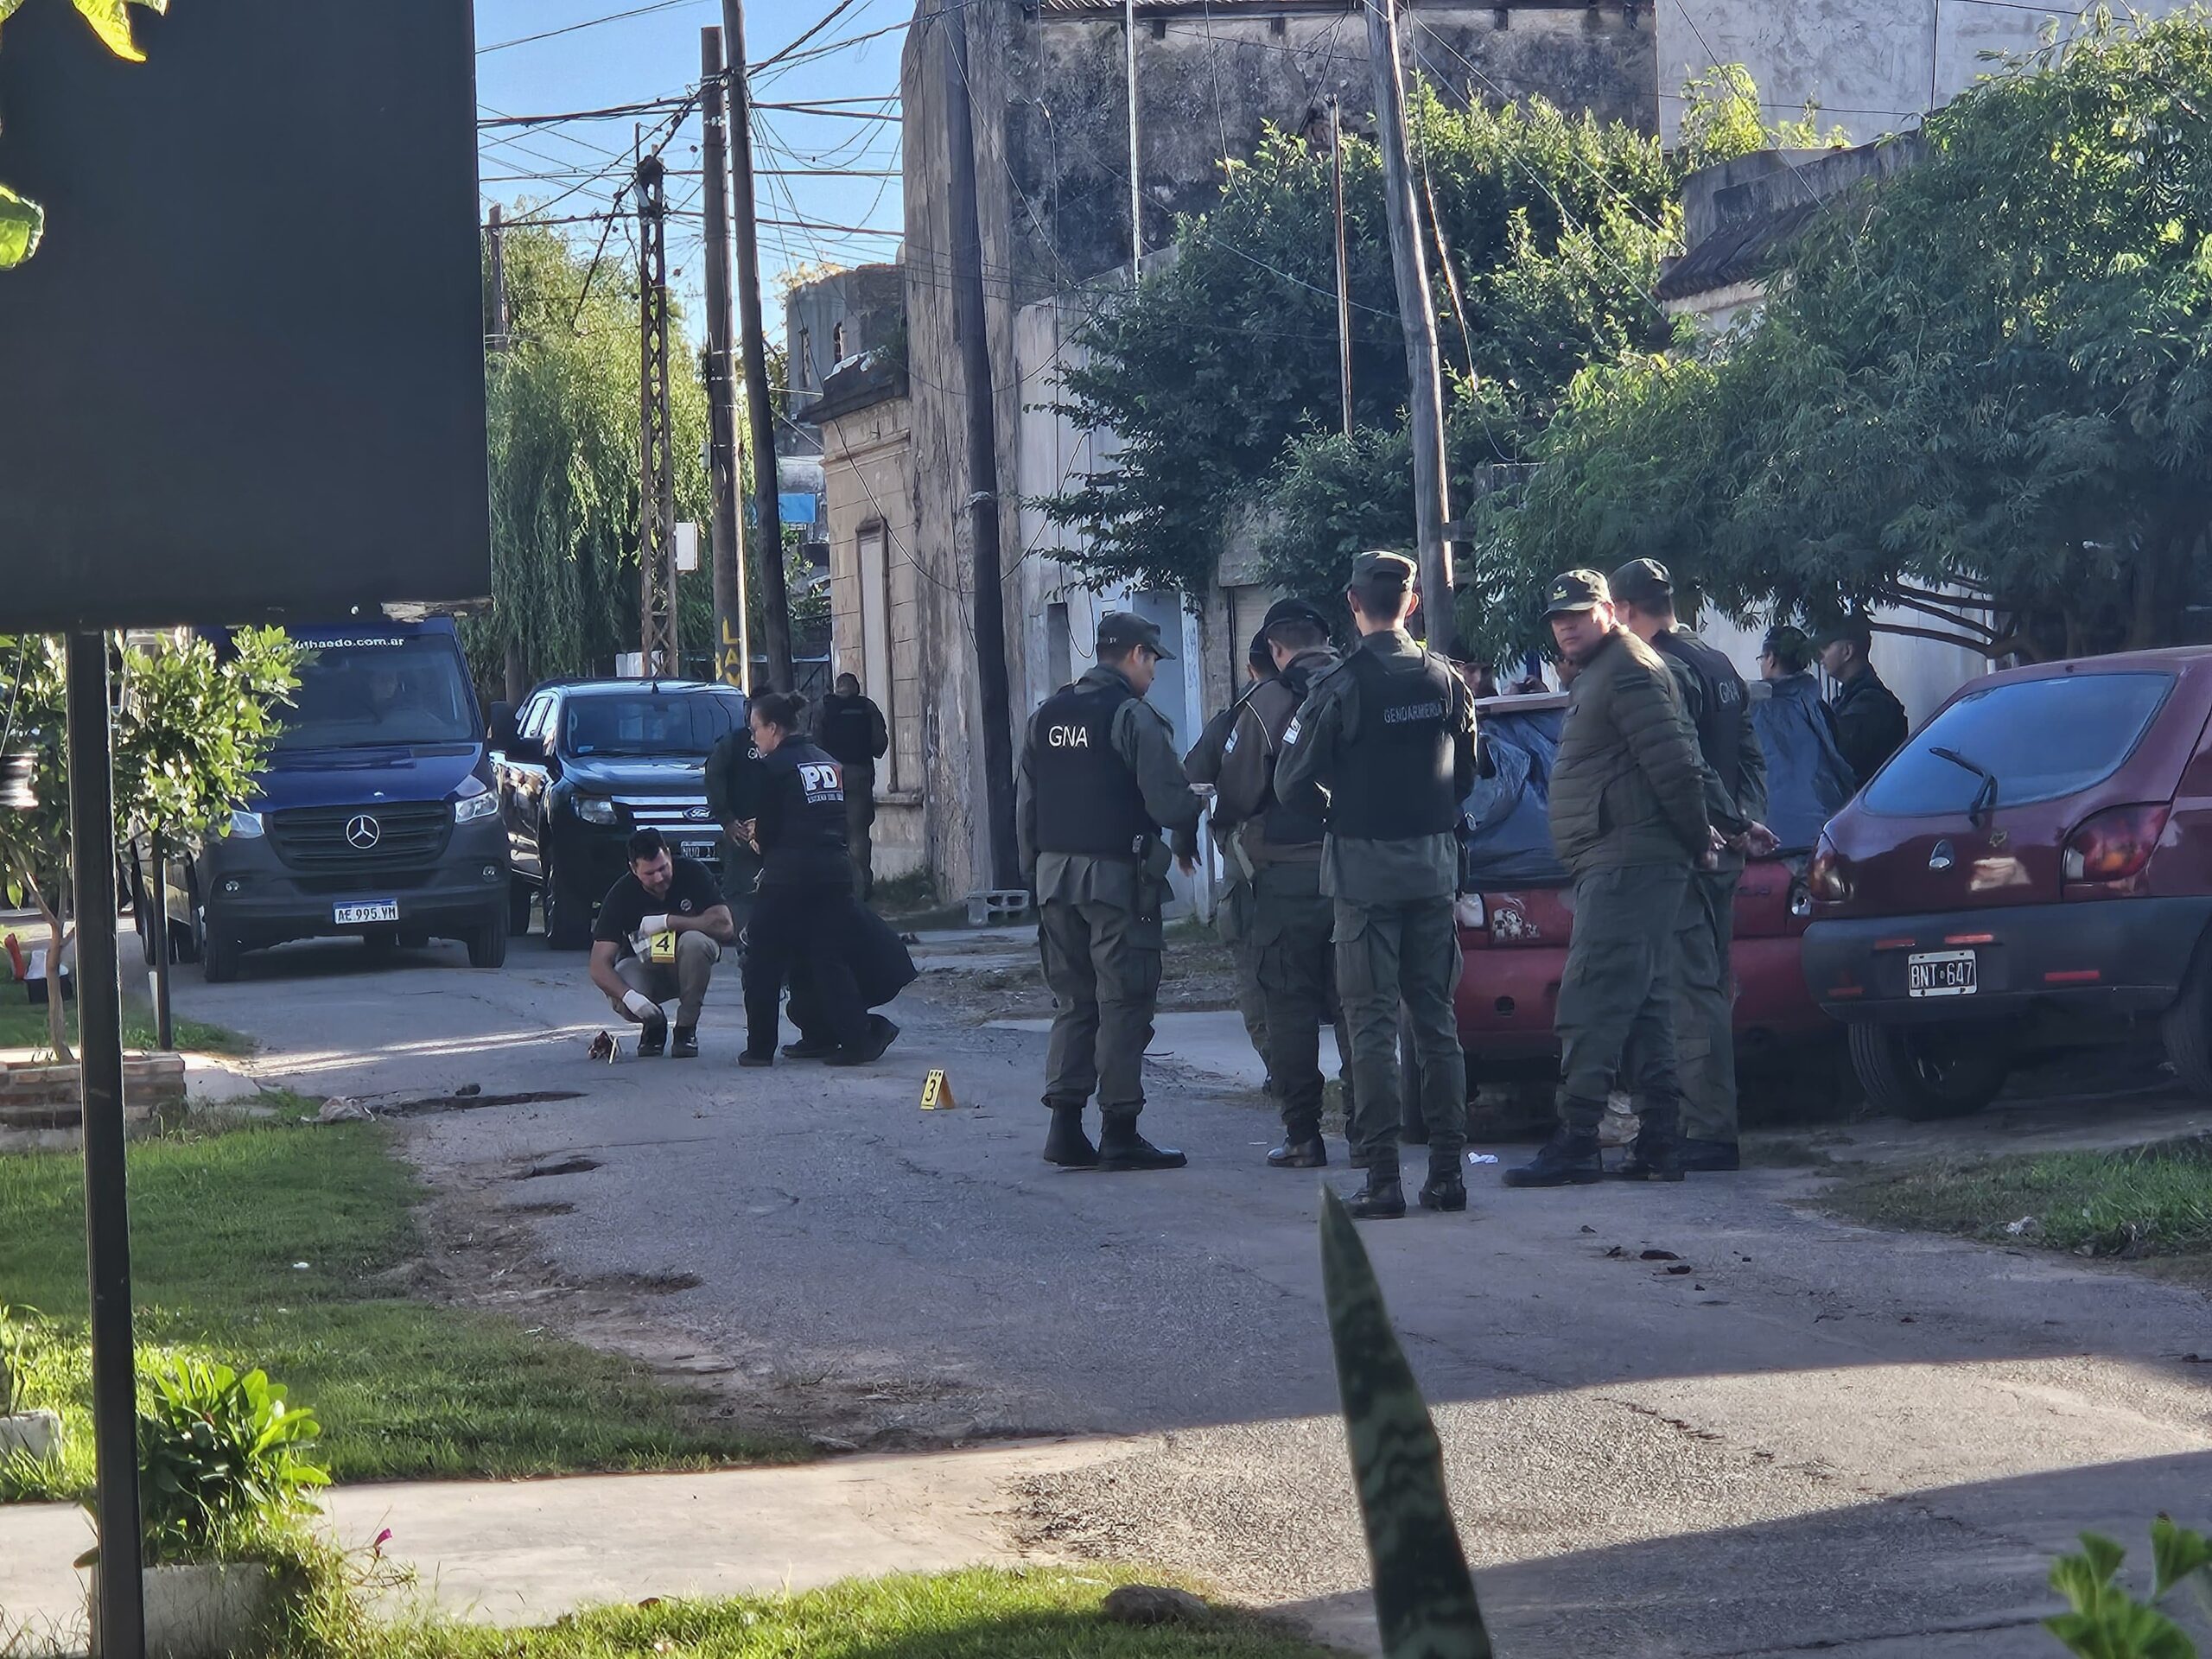 Continúa la violencia en Rosario: Balearon a un chico de 14 años mientras abría el portón de su casa